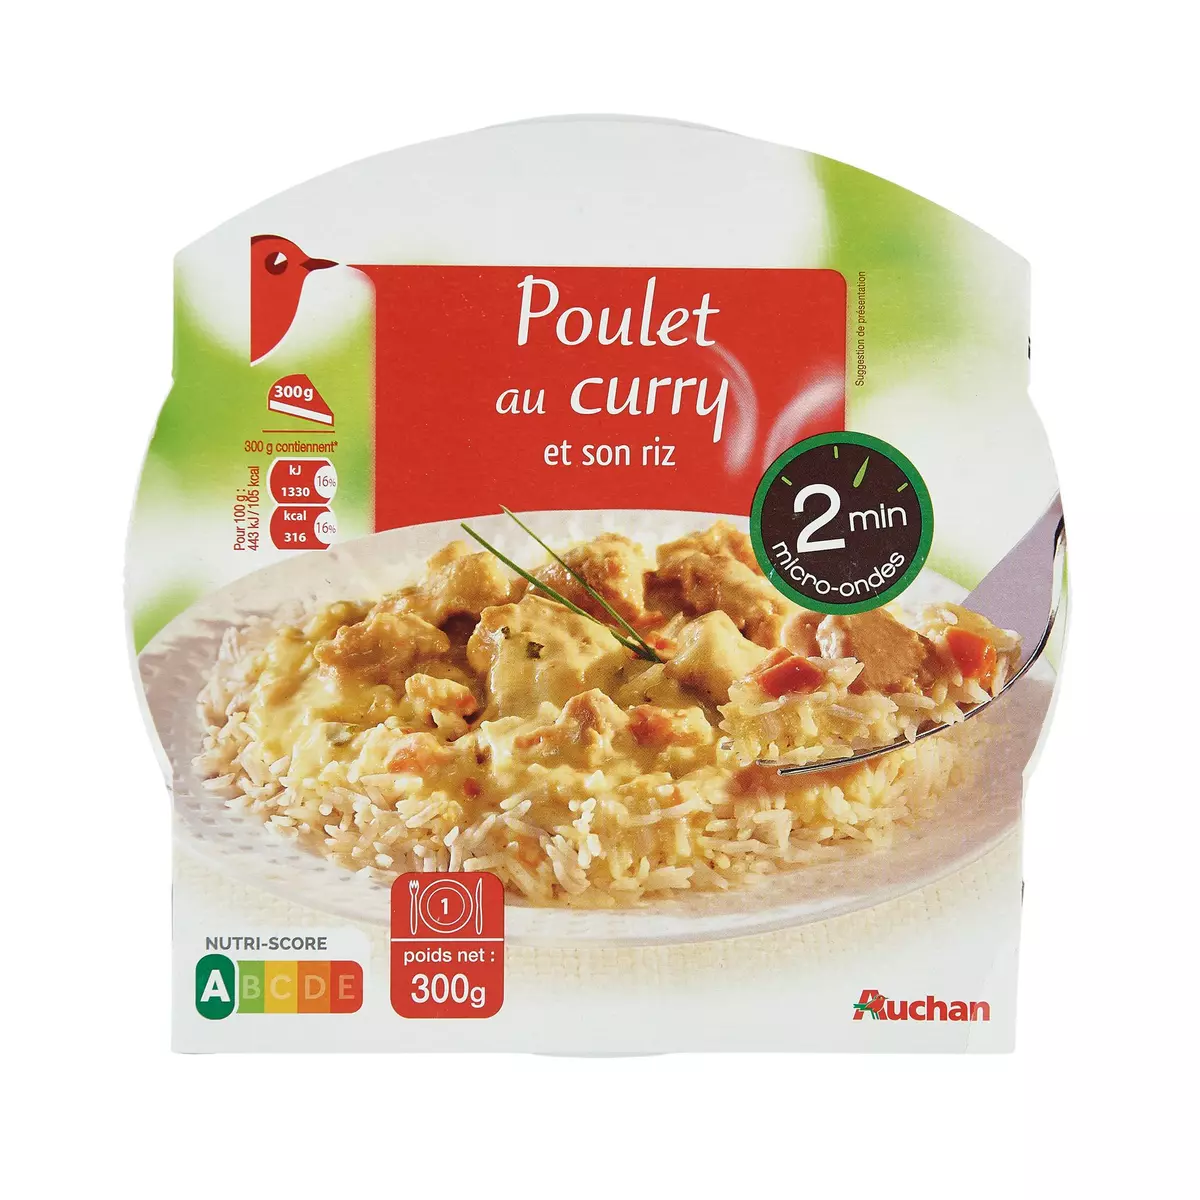 AUCHAN Poulet au curry et son riz barquette 2min au micro-ondes 1 personne 300g